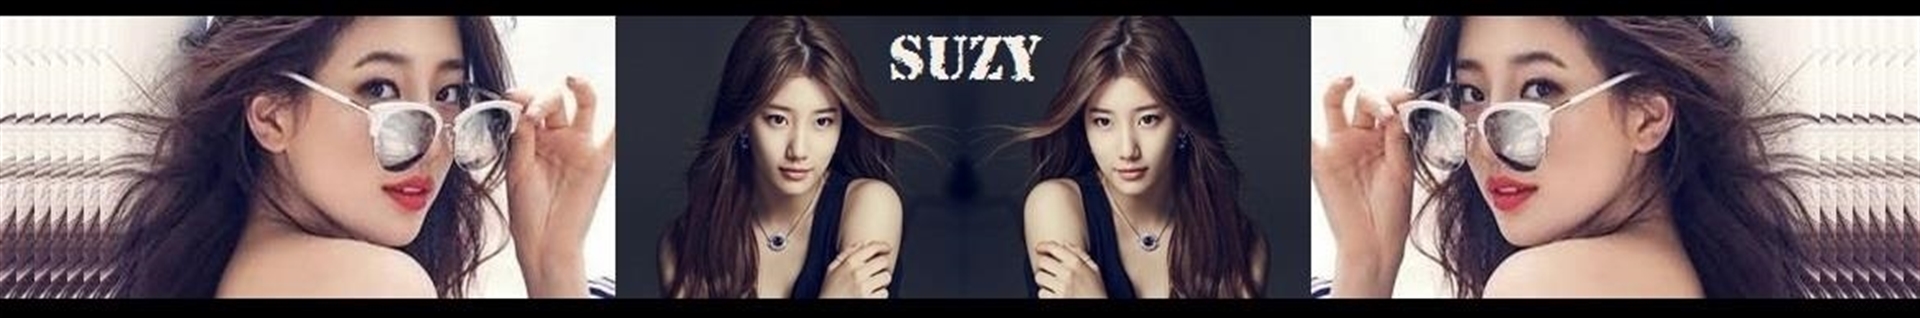 suzy